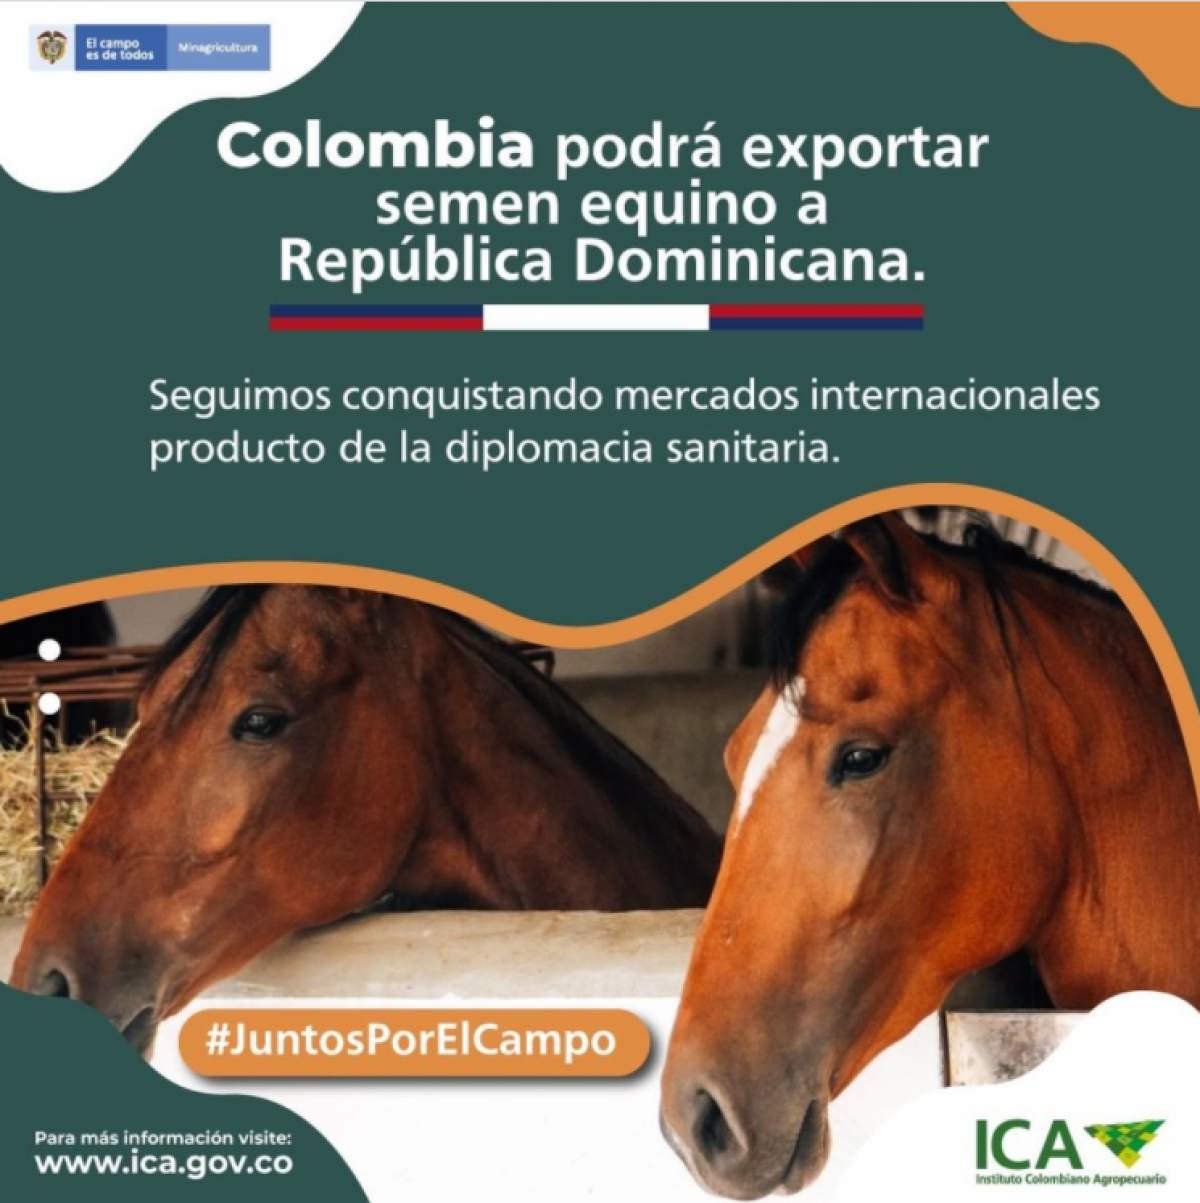 COLOMBIA PODRA EXPORTAR SEMEN EQUINO A REPUBLICA DOMINICANA